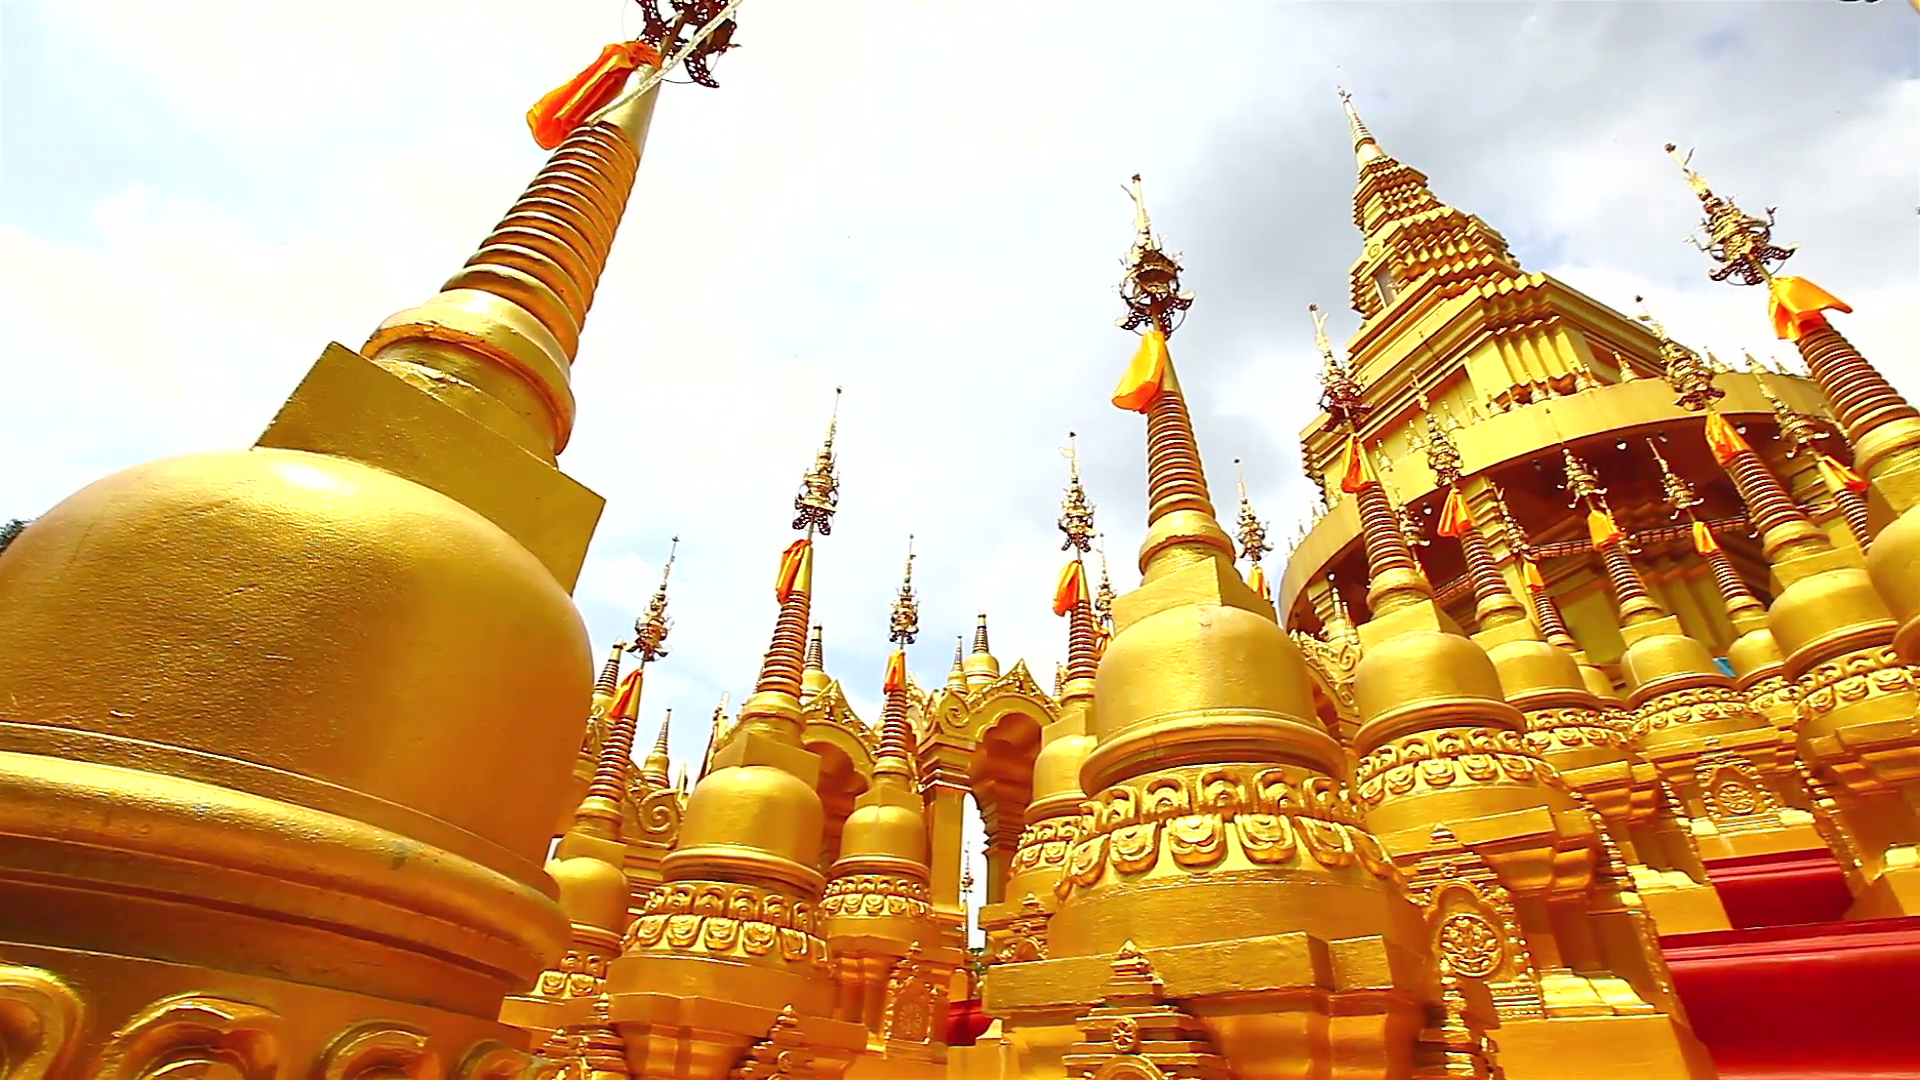 HD: Golden pagoda in Wat-Sawangboon temple at Saraburi province ...